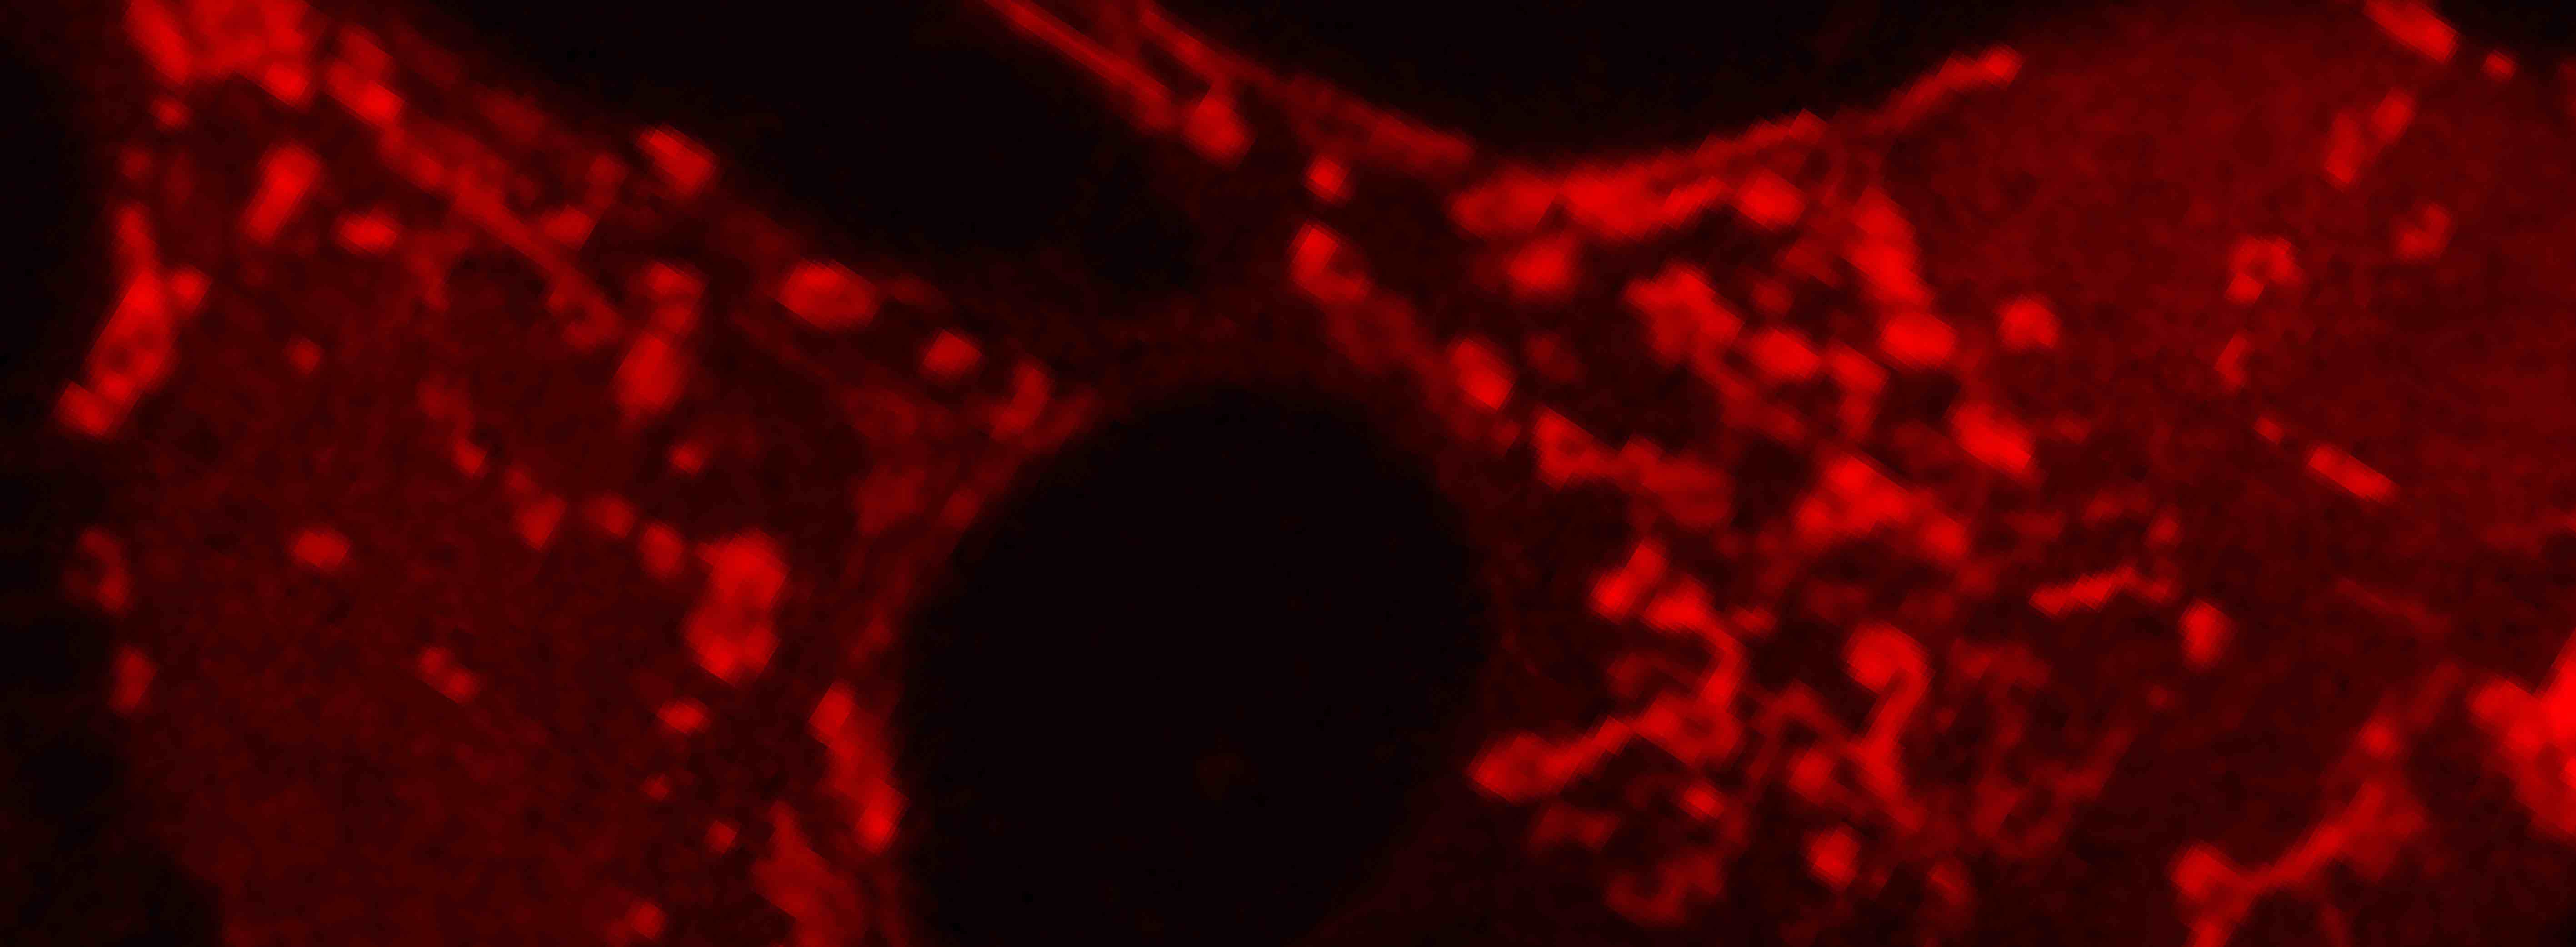 具有发光的红色荧光线粒体的松鼠脑细胞